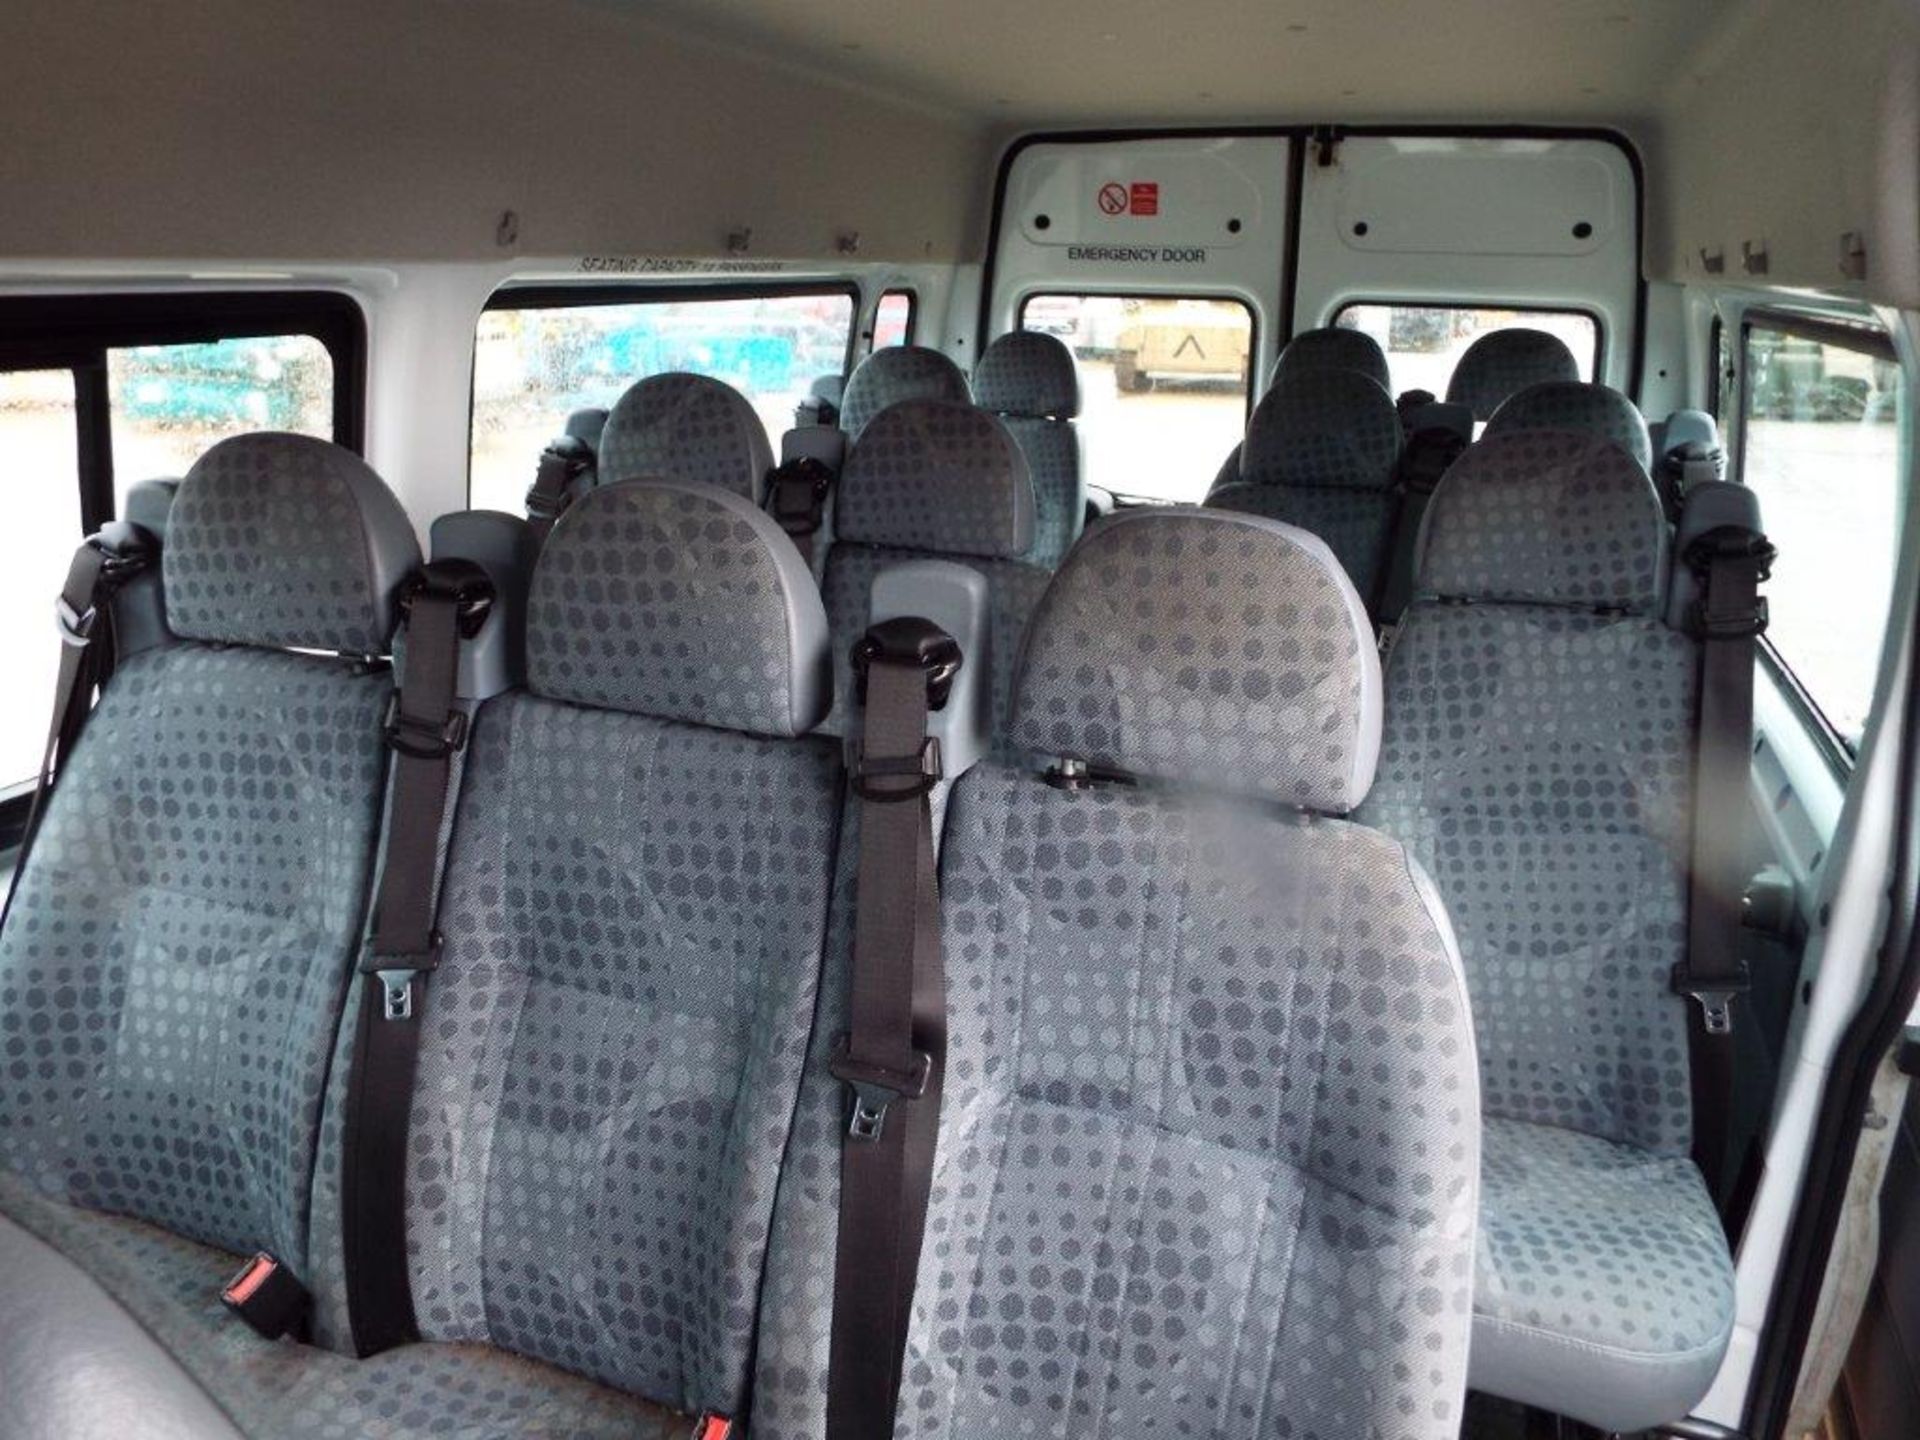 Ford Transit 15 Seat Minibus - Image 15 of 23